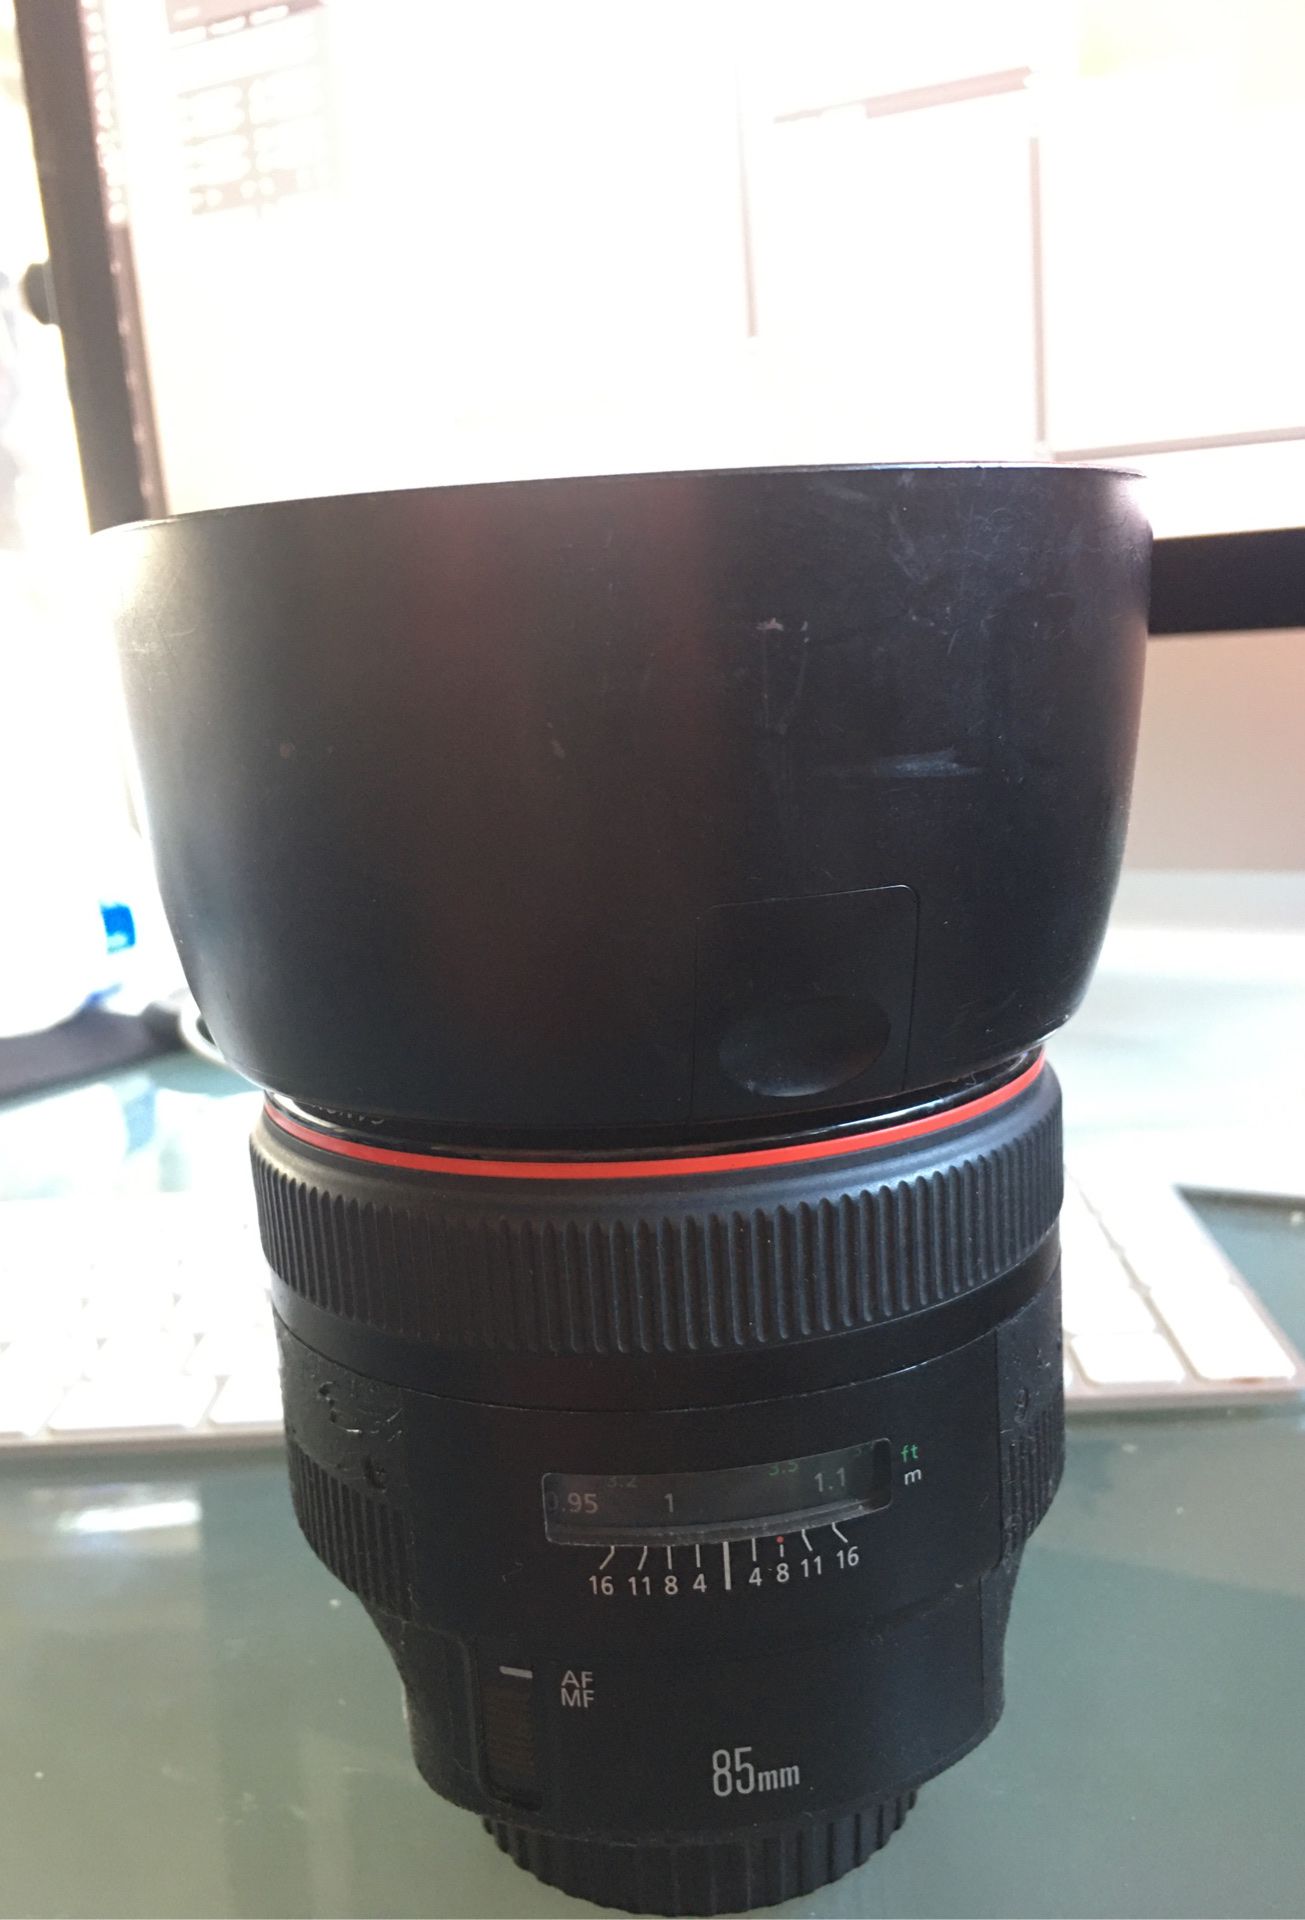 Canon 85mm 1:1.2 L lense